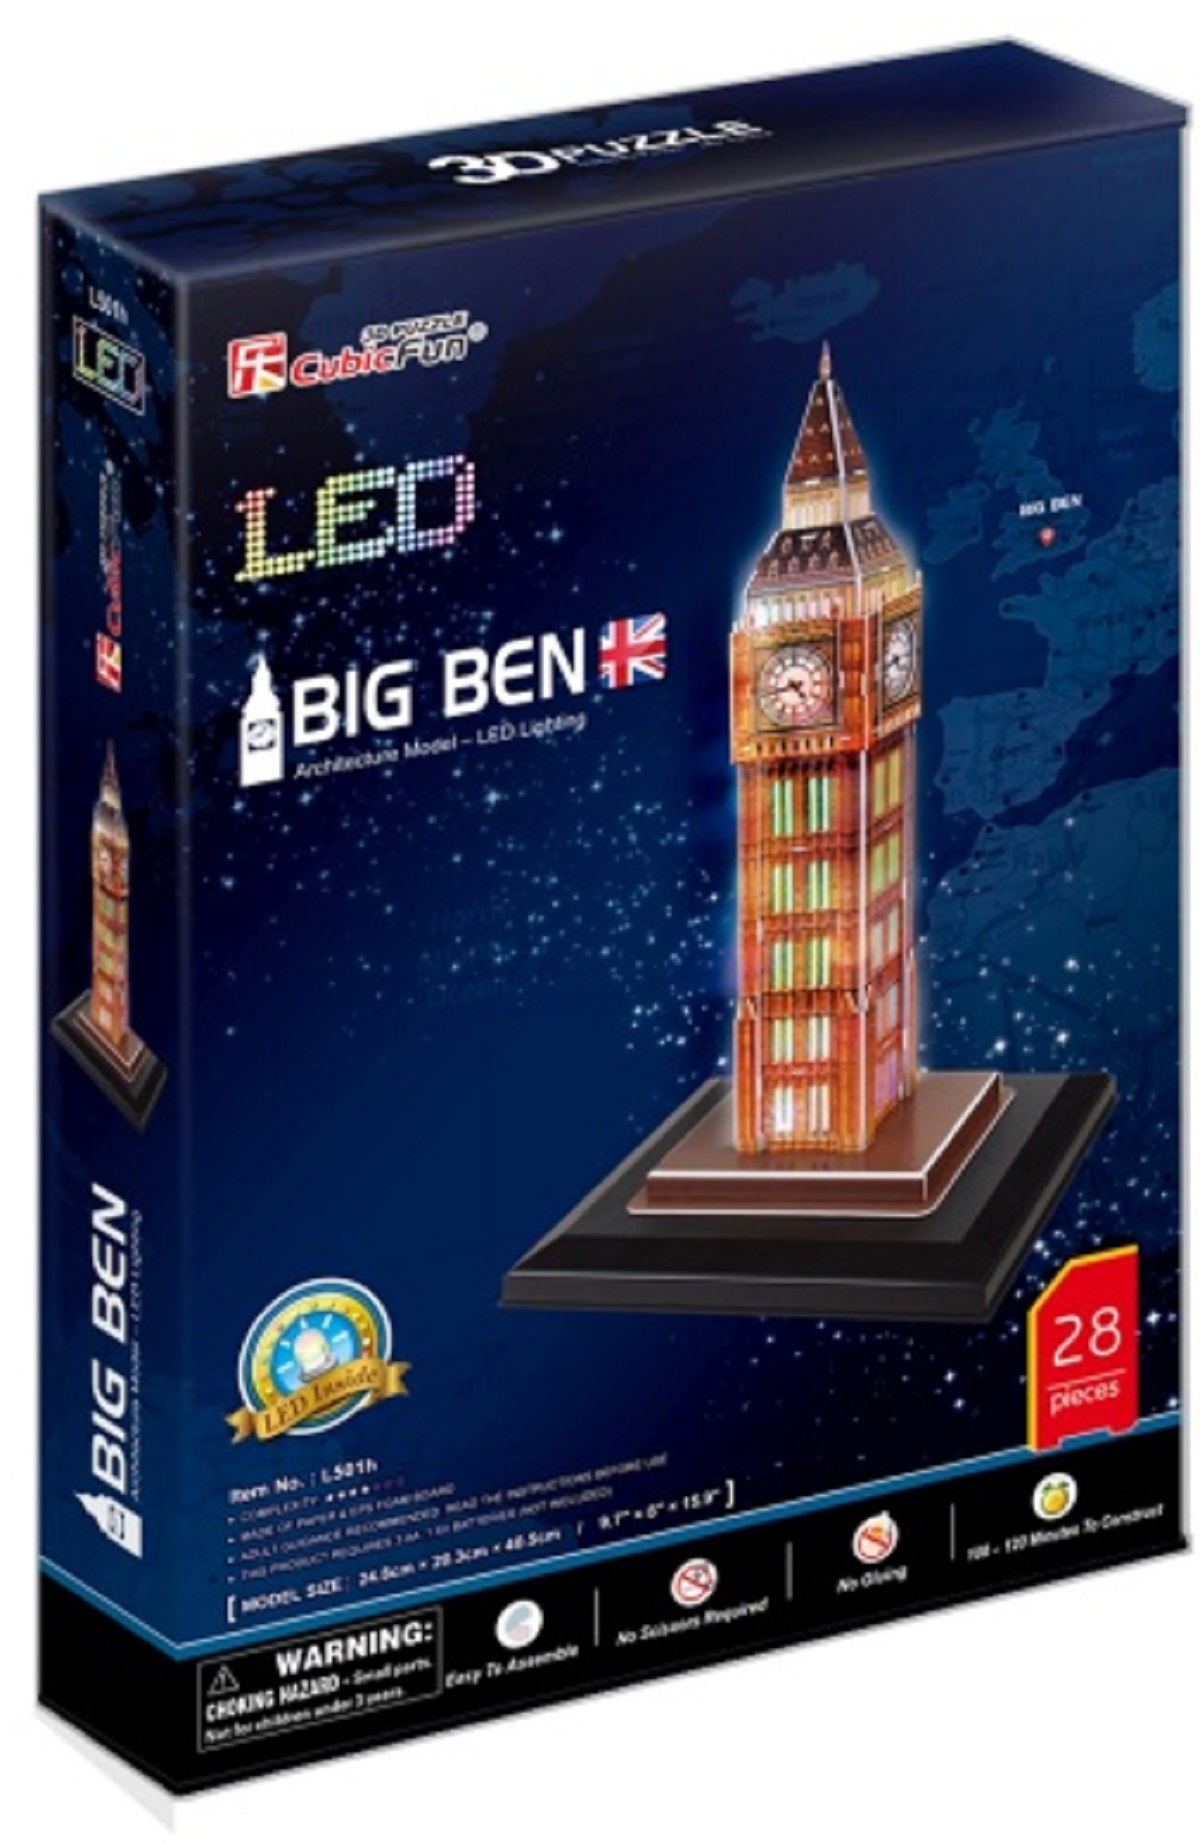 Puzzle 3D Led. Big Ben